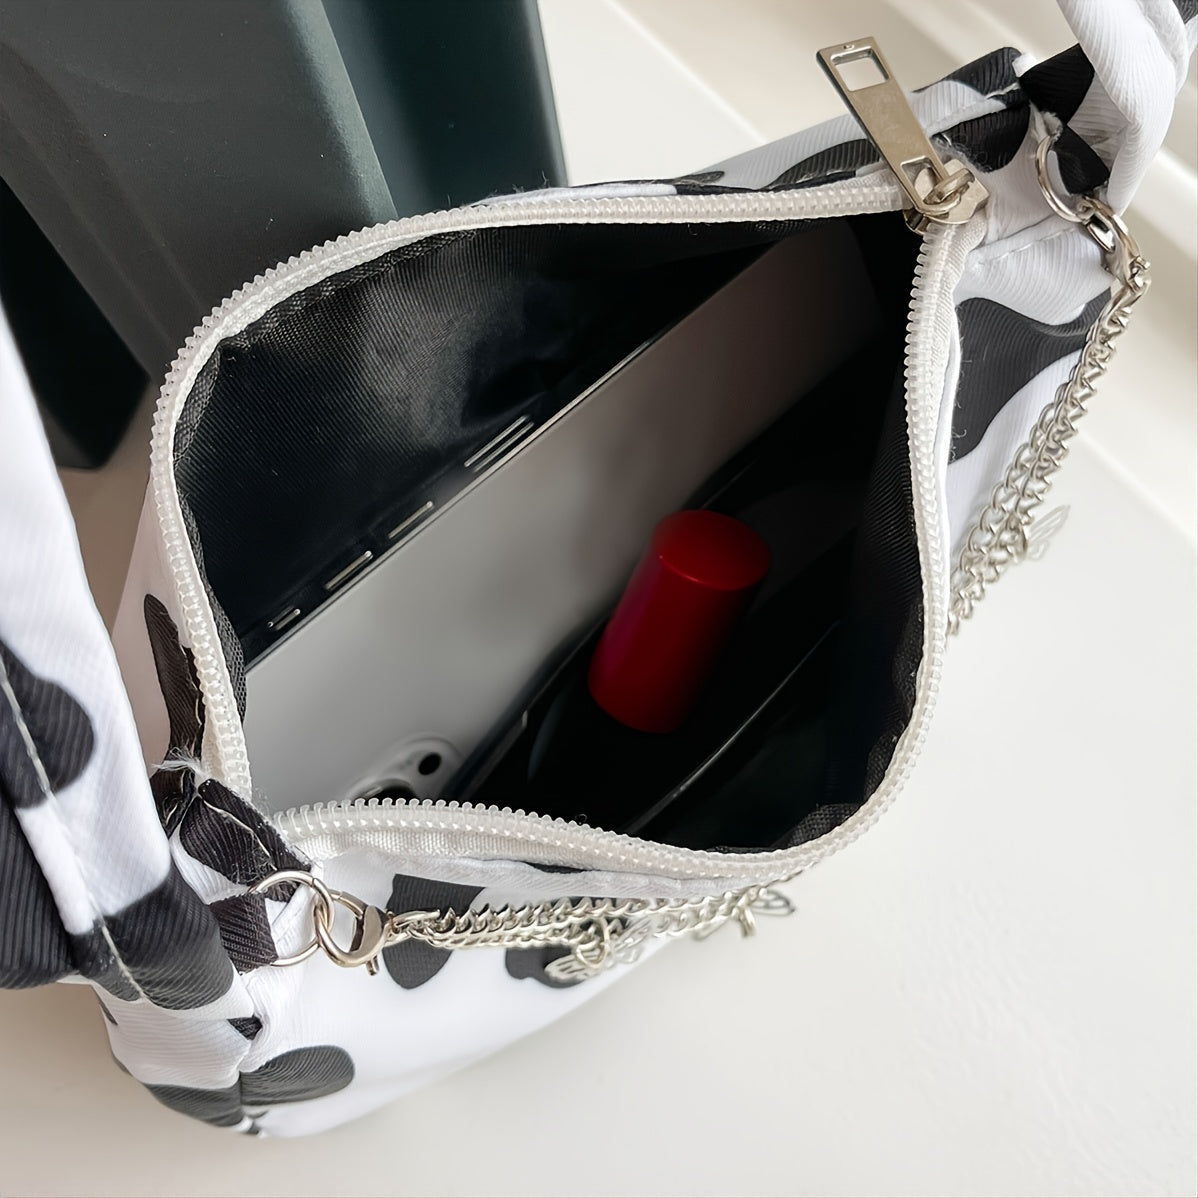 Cow Print Shoulder Bag - Elegant Zipper Fashion Chain Decor Baguette Bag